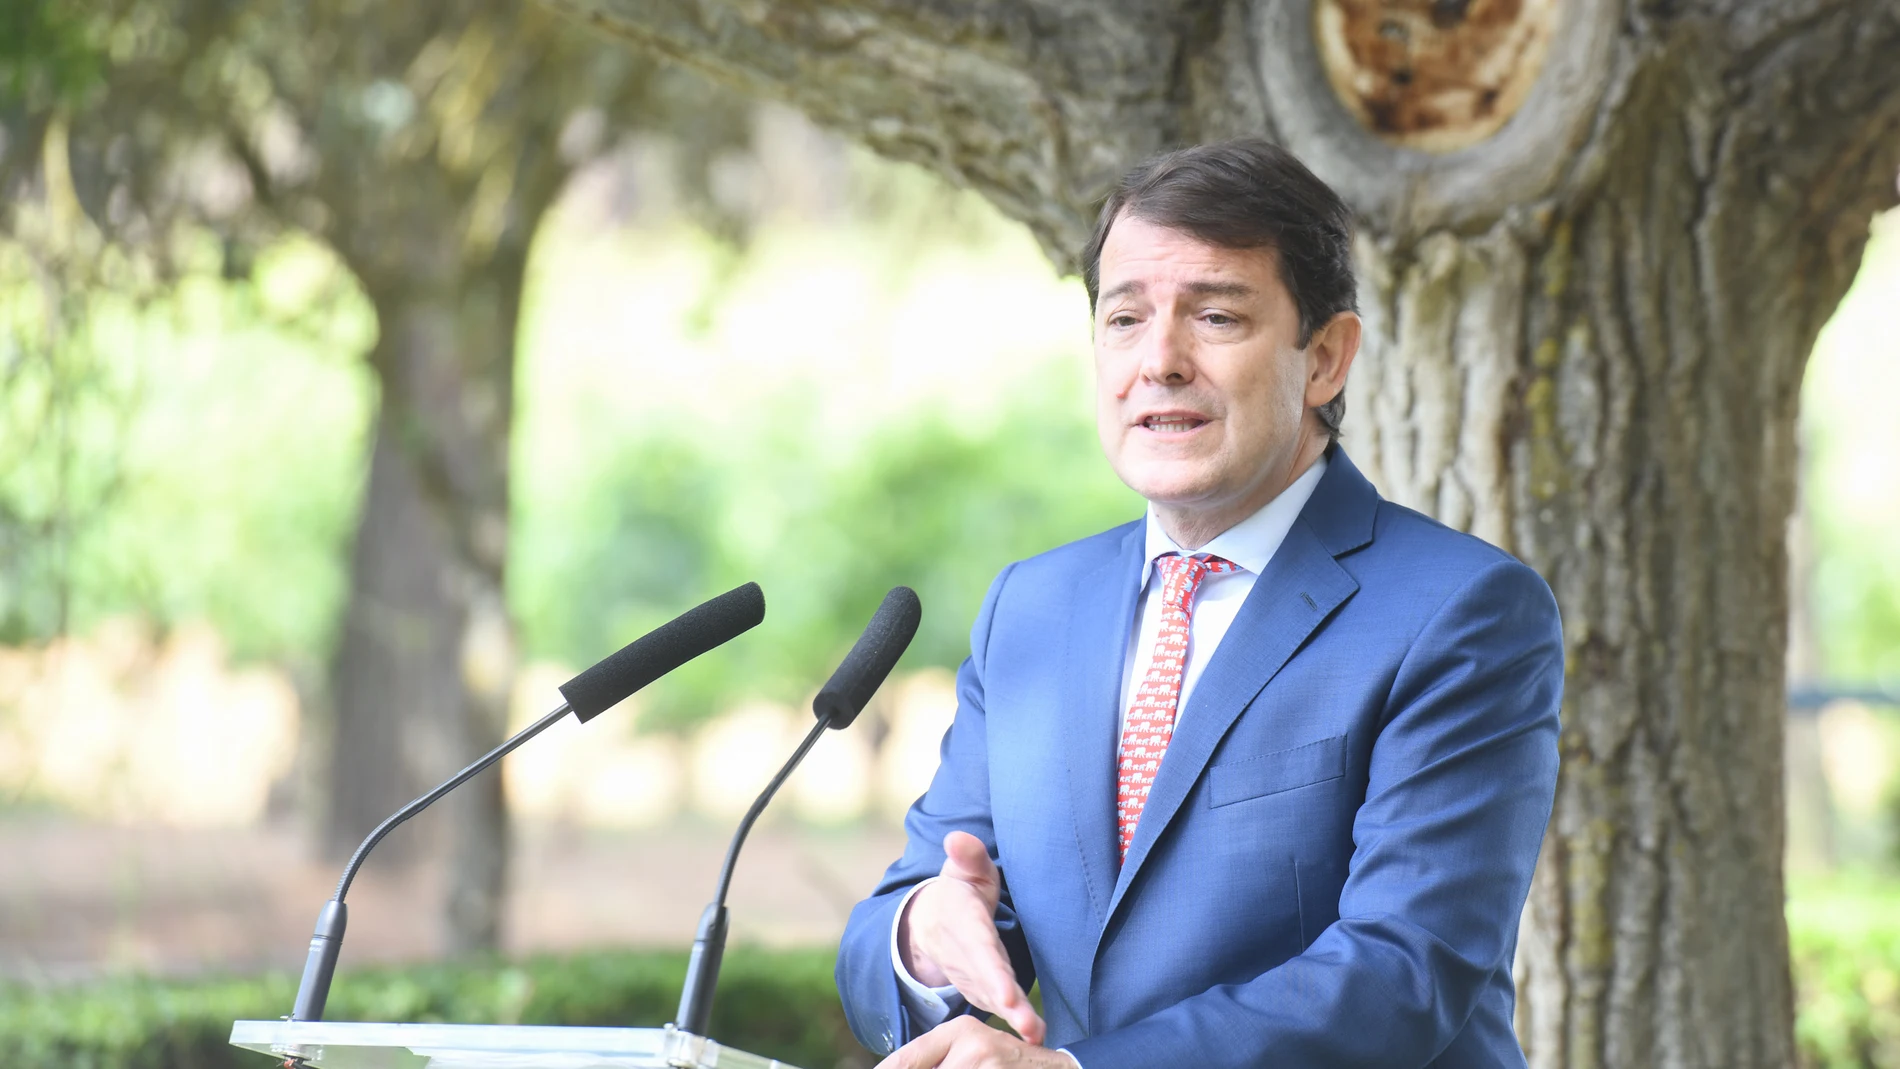 El presidente de la Junta de Castilla y León, Alfonso Fernández Mañueco, participa en la IX edición del Curso Universitario de Verano "Prensa y Poder"